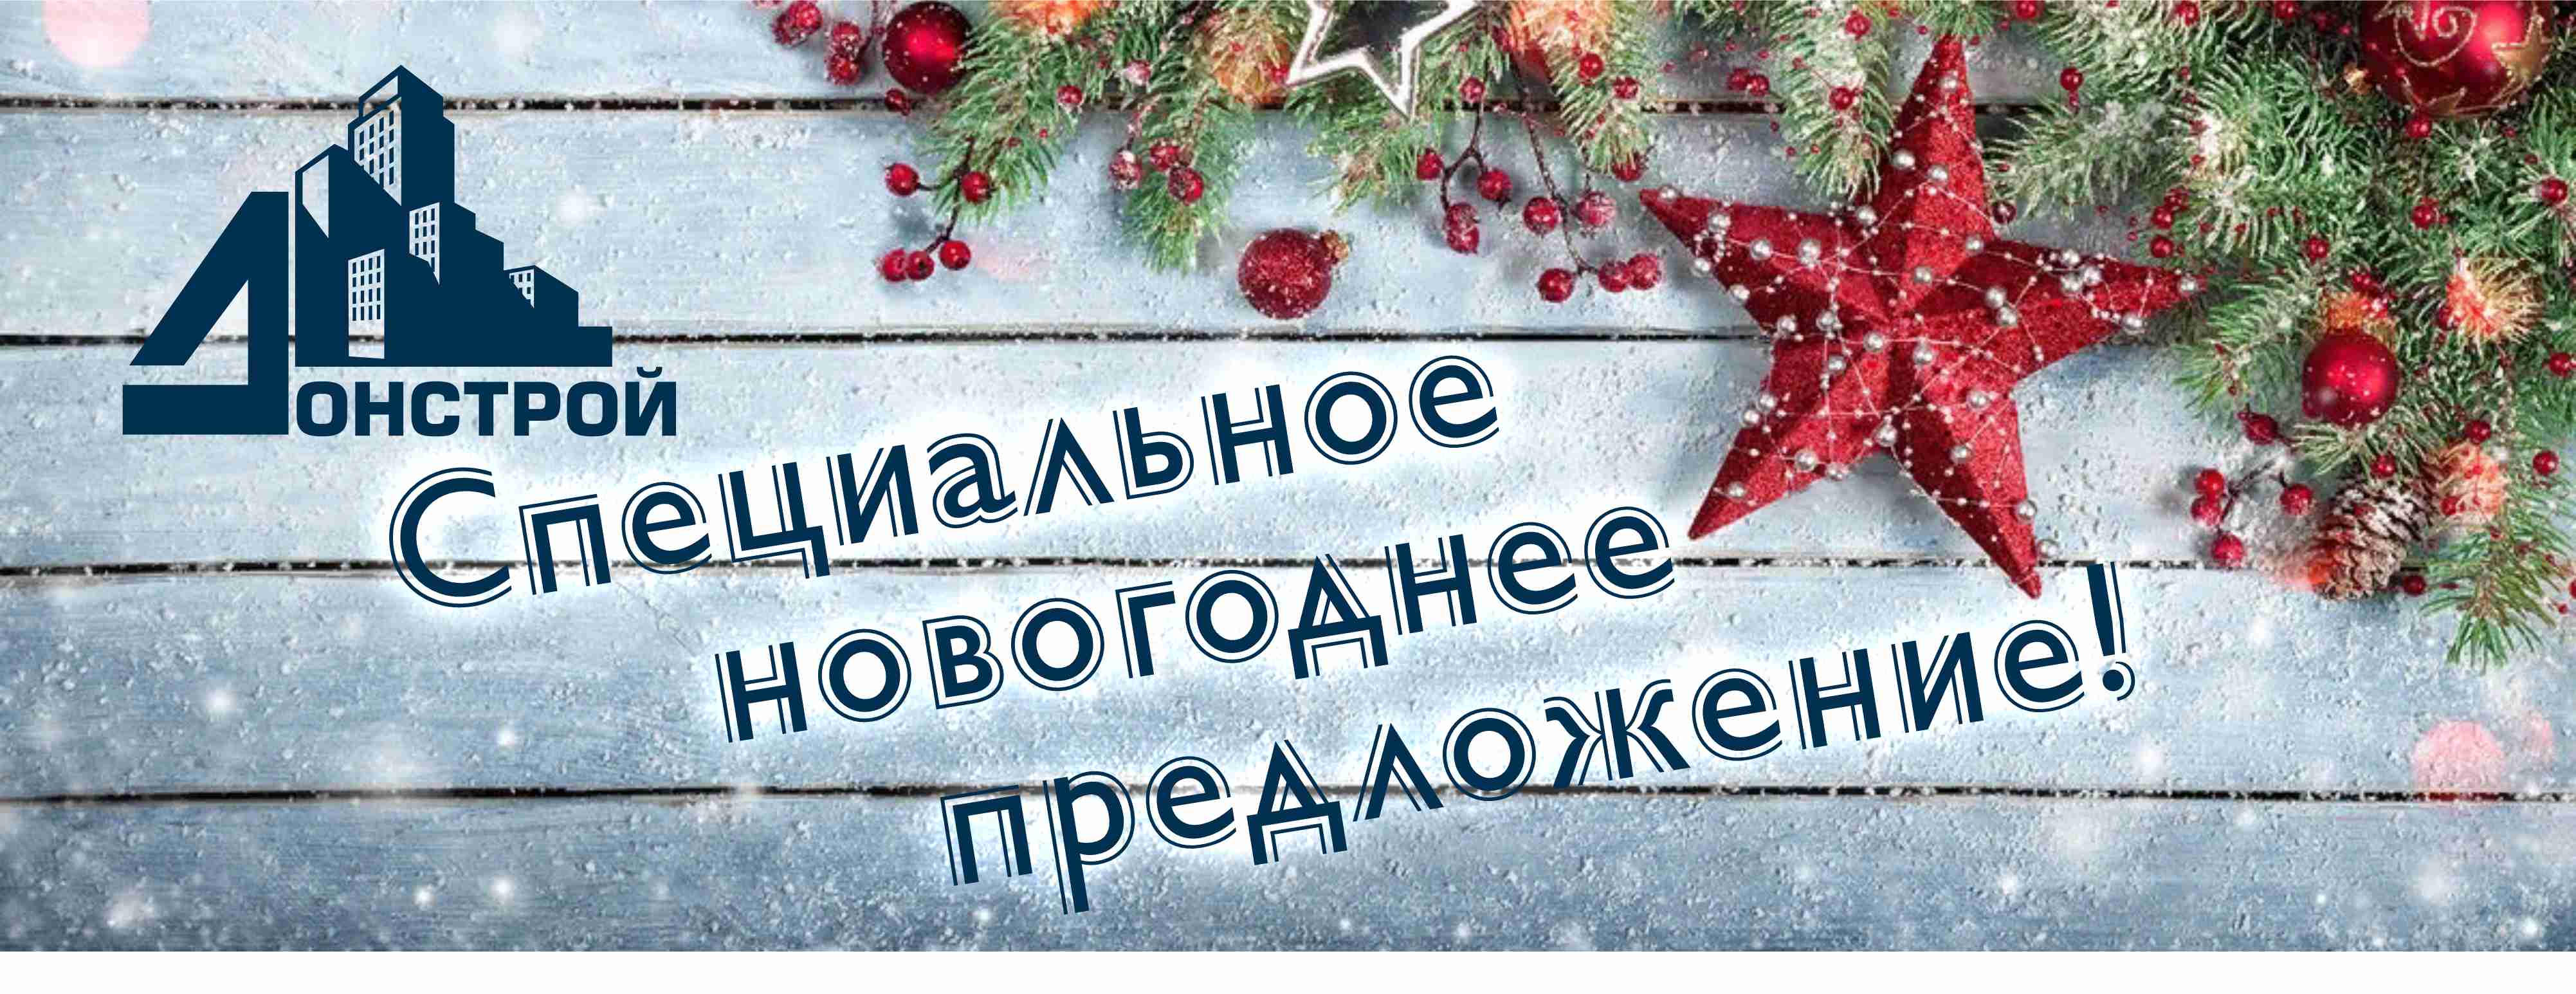 Новогоднее предложение: квартира в строительной компании Донстрой со скидкой до 250 000 рублей!